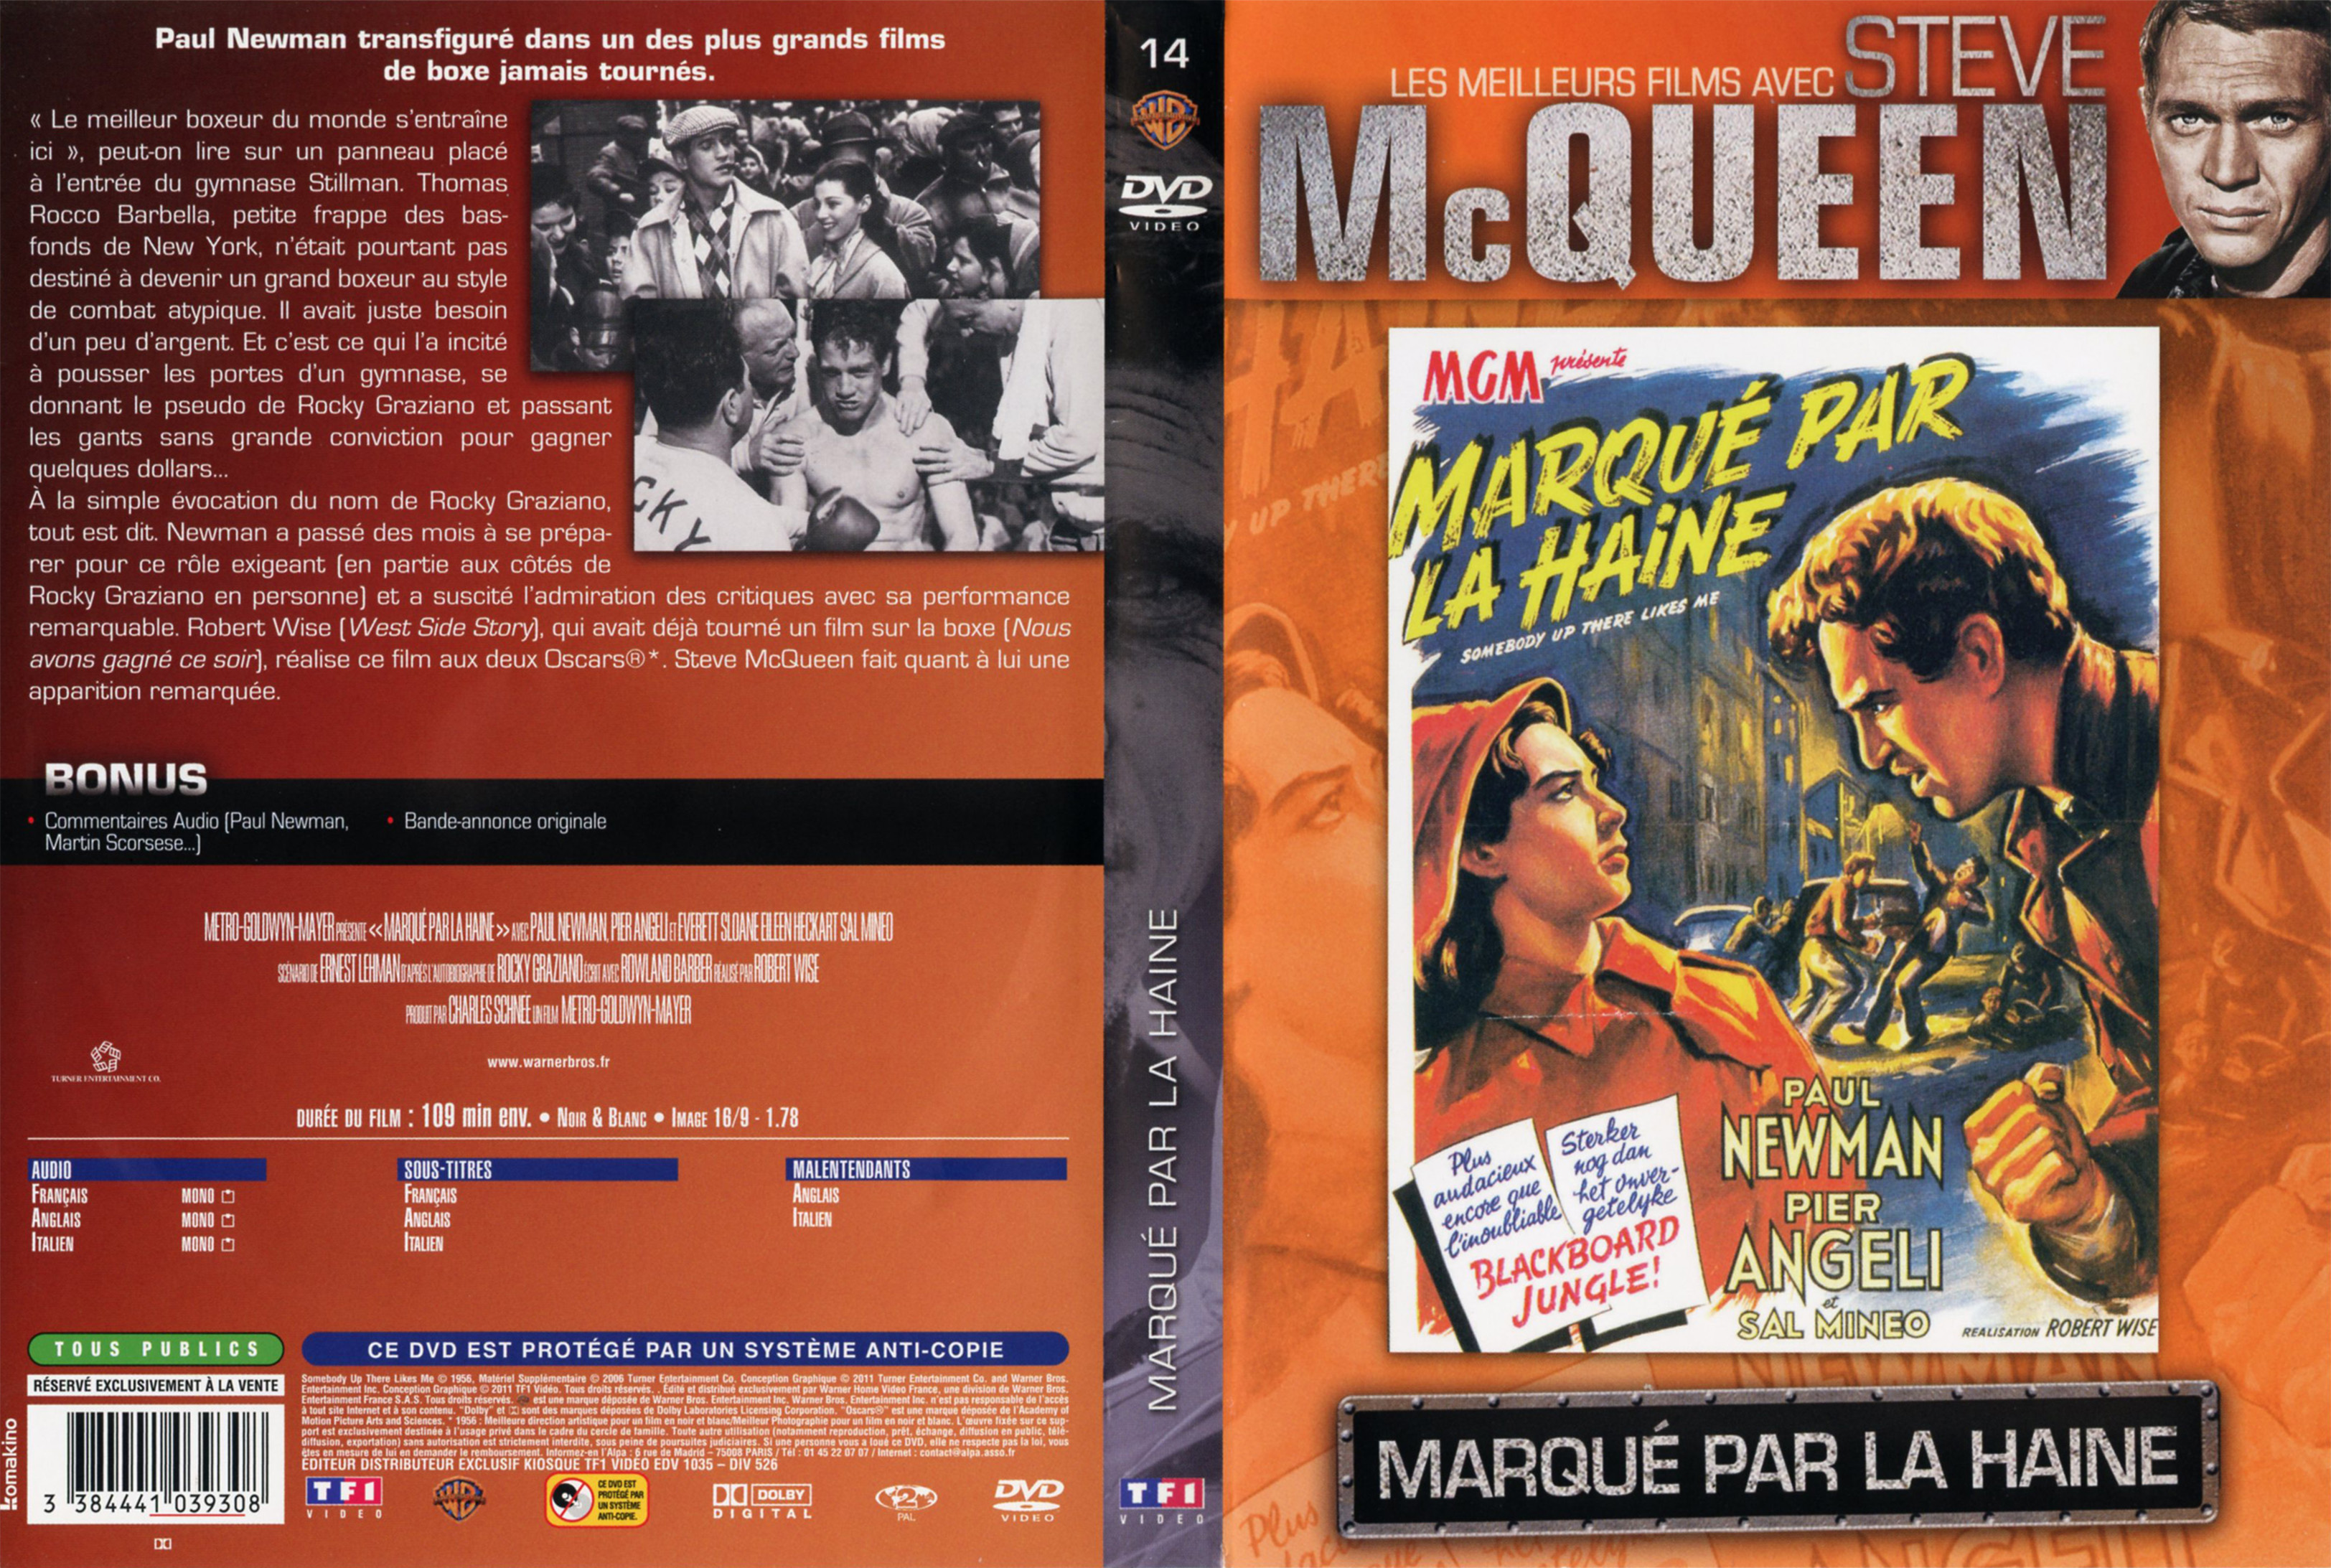 Jaquette DVD Marqu par la haine v2